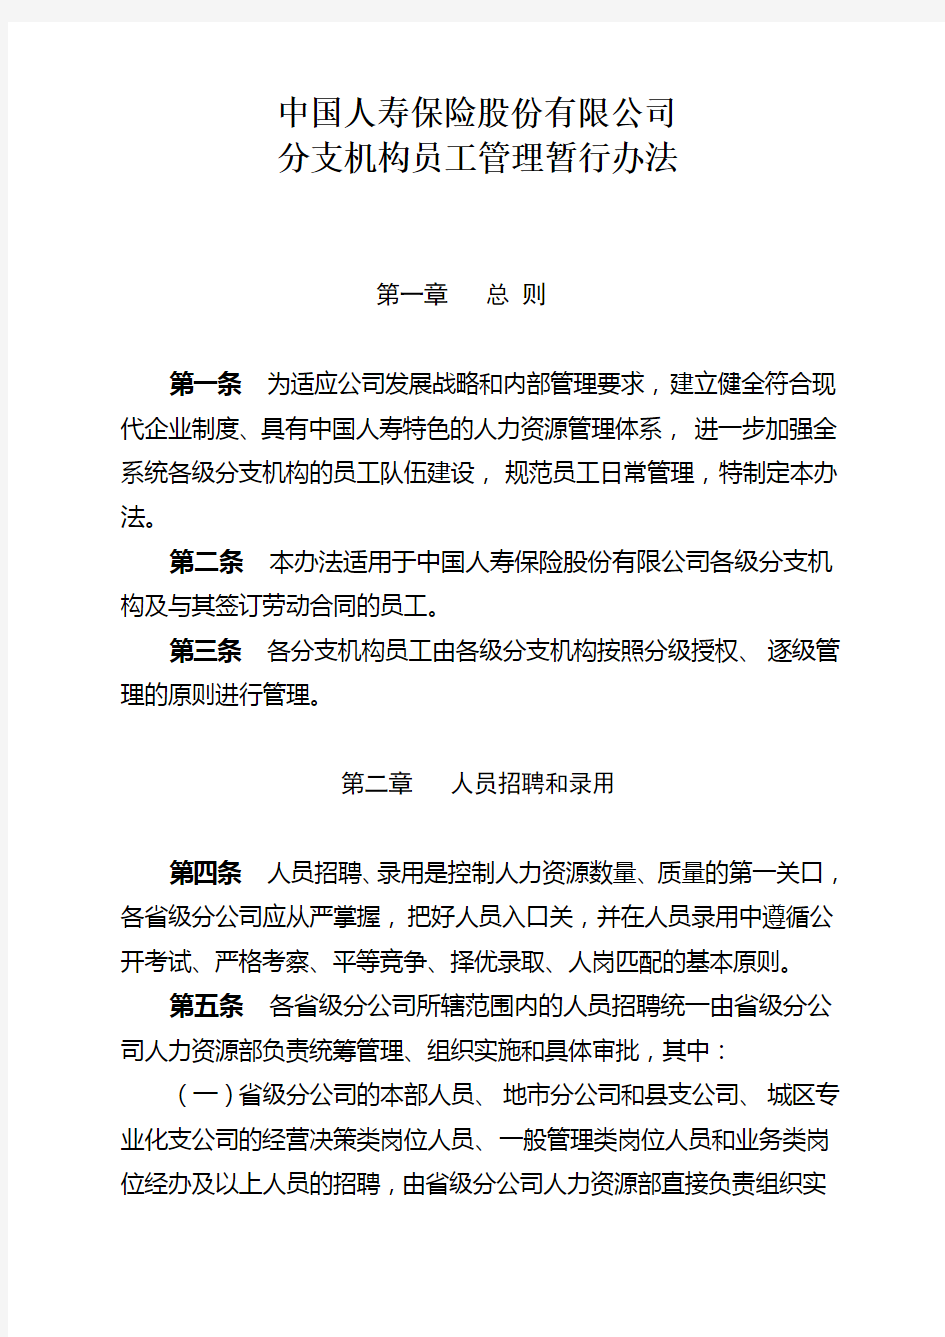 中国人寿保险股份有限公司分支机构员工管理暂行办法